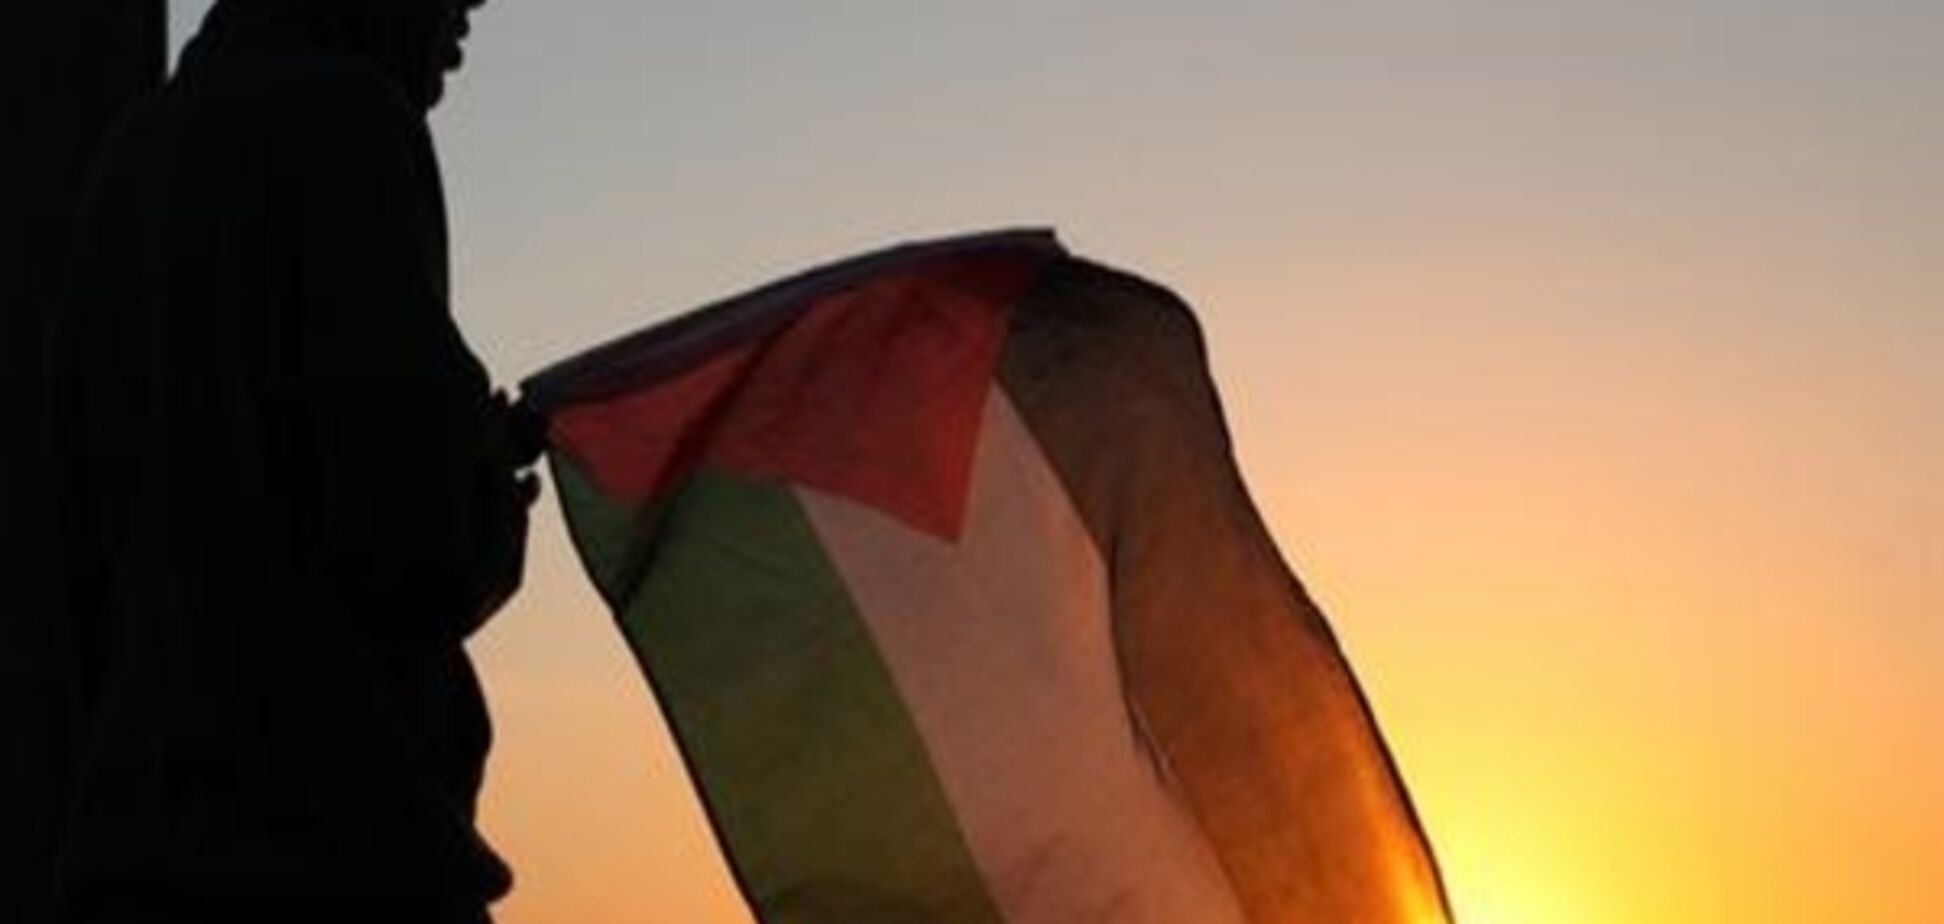 Генсек ООН нагадав США про важливість створення палестинської держави